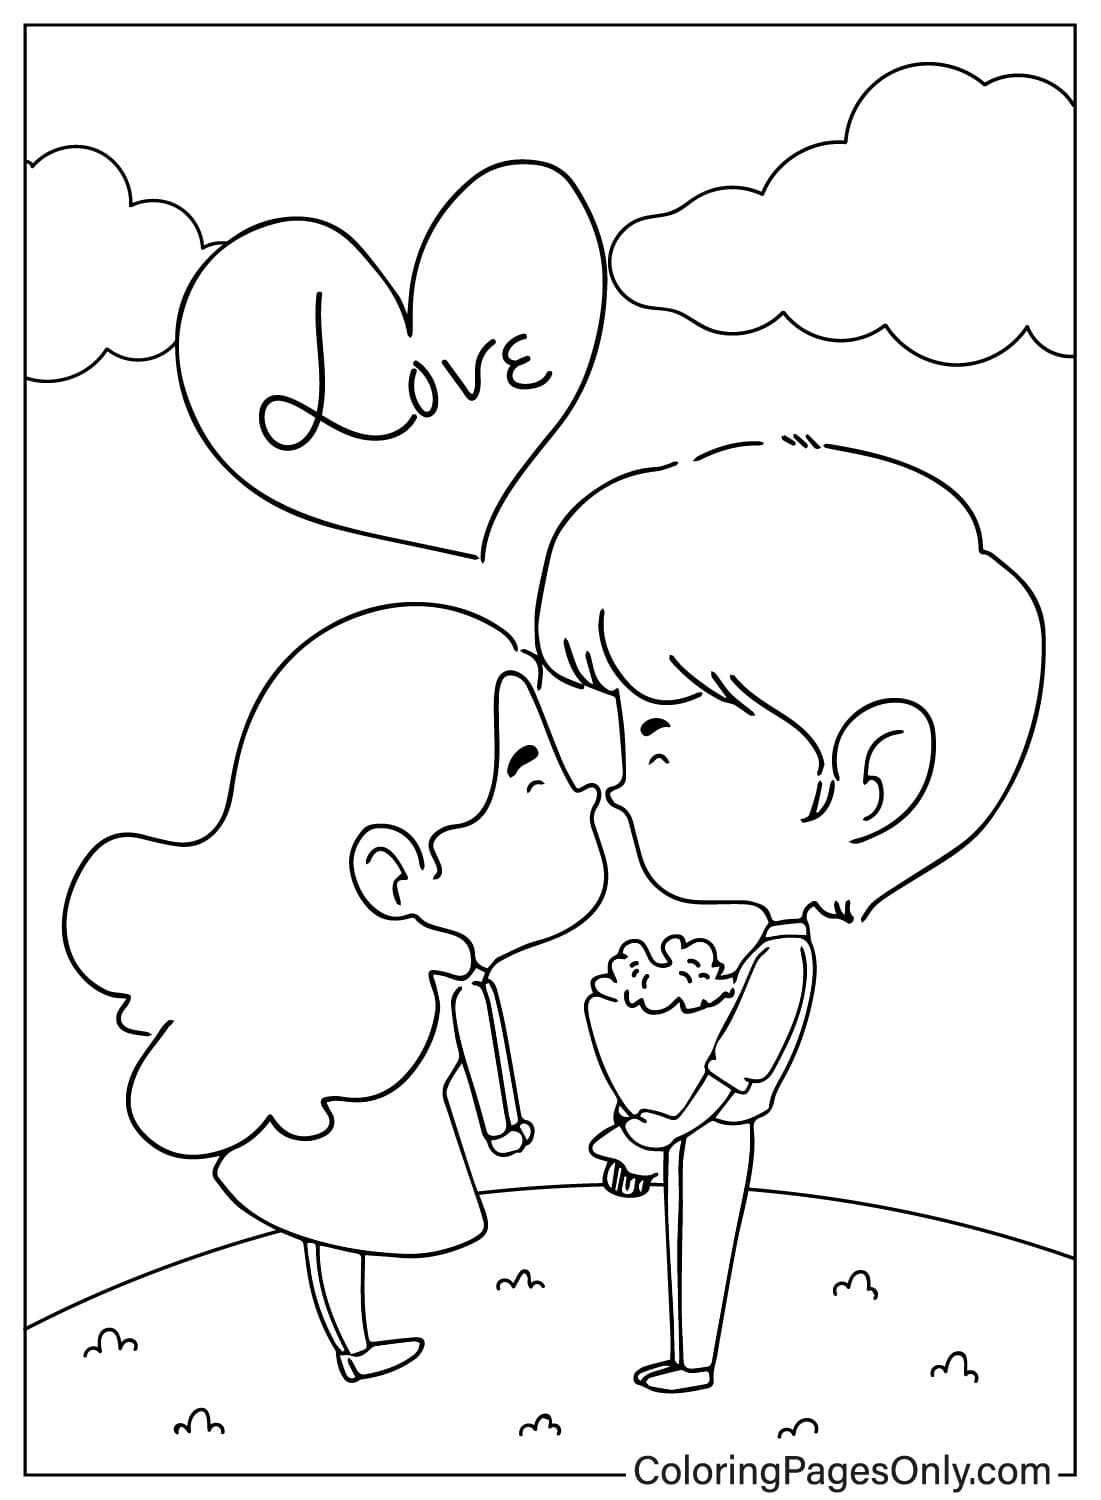 Página para colorear gratis del Día de San Valentín del Día de San Valentín